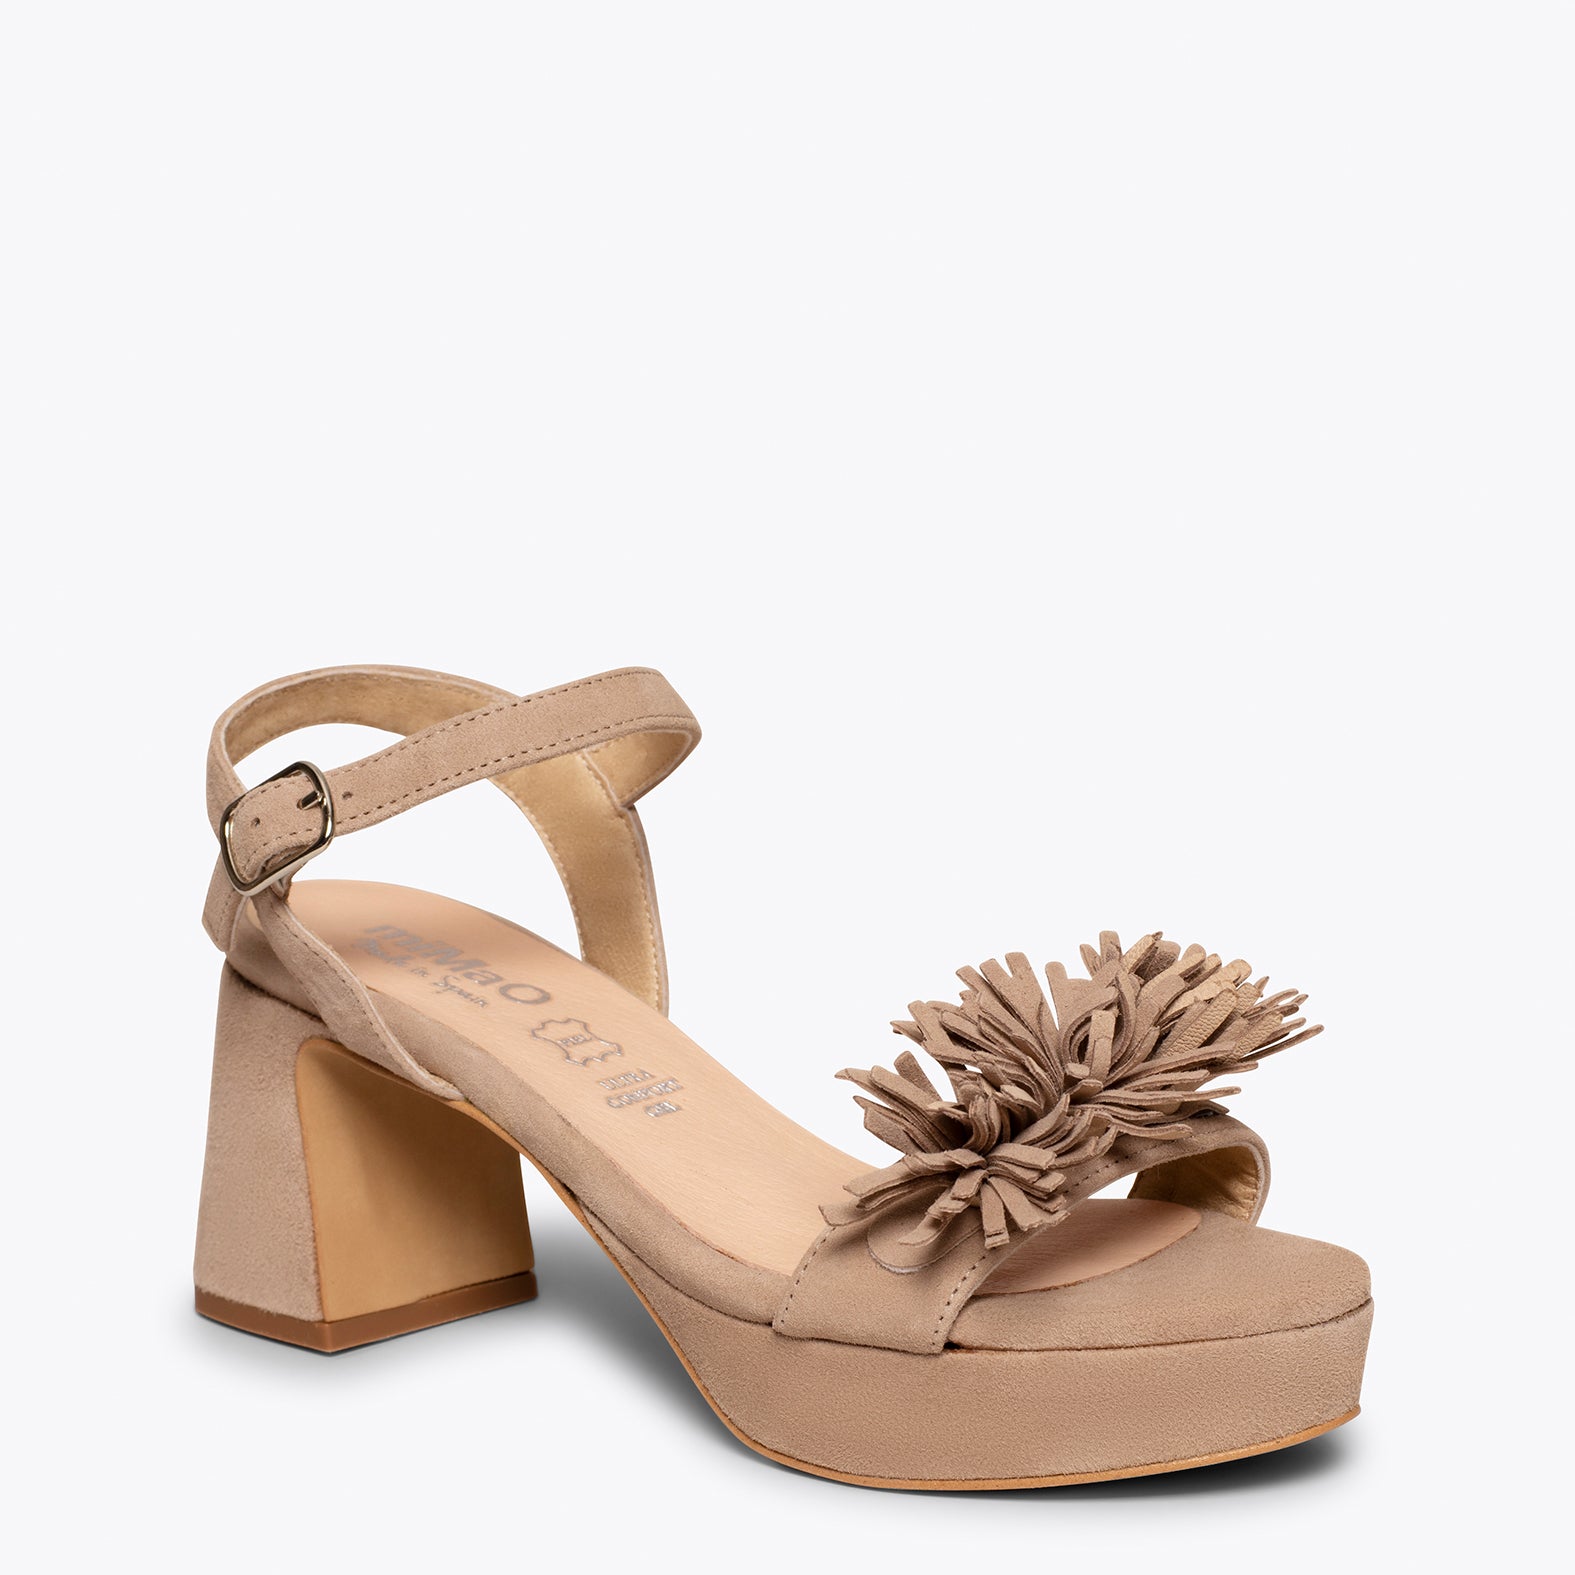 POMPOM – BEIGE mid heel sandals with fringes